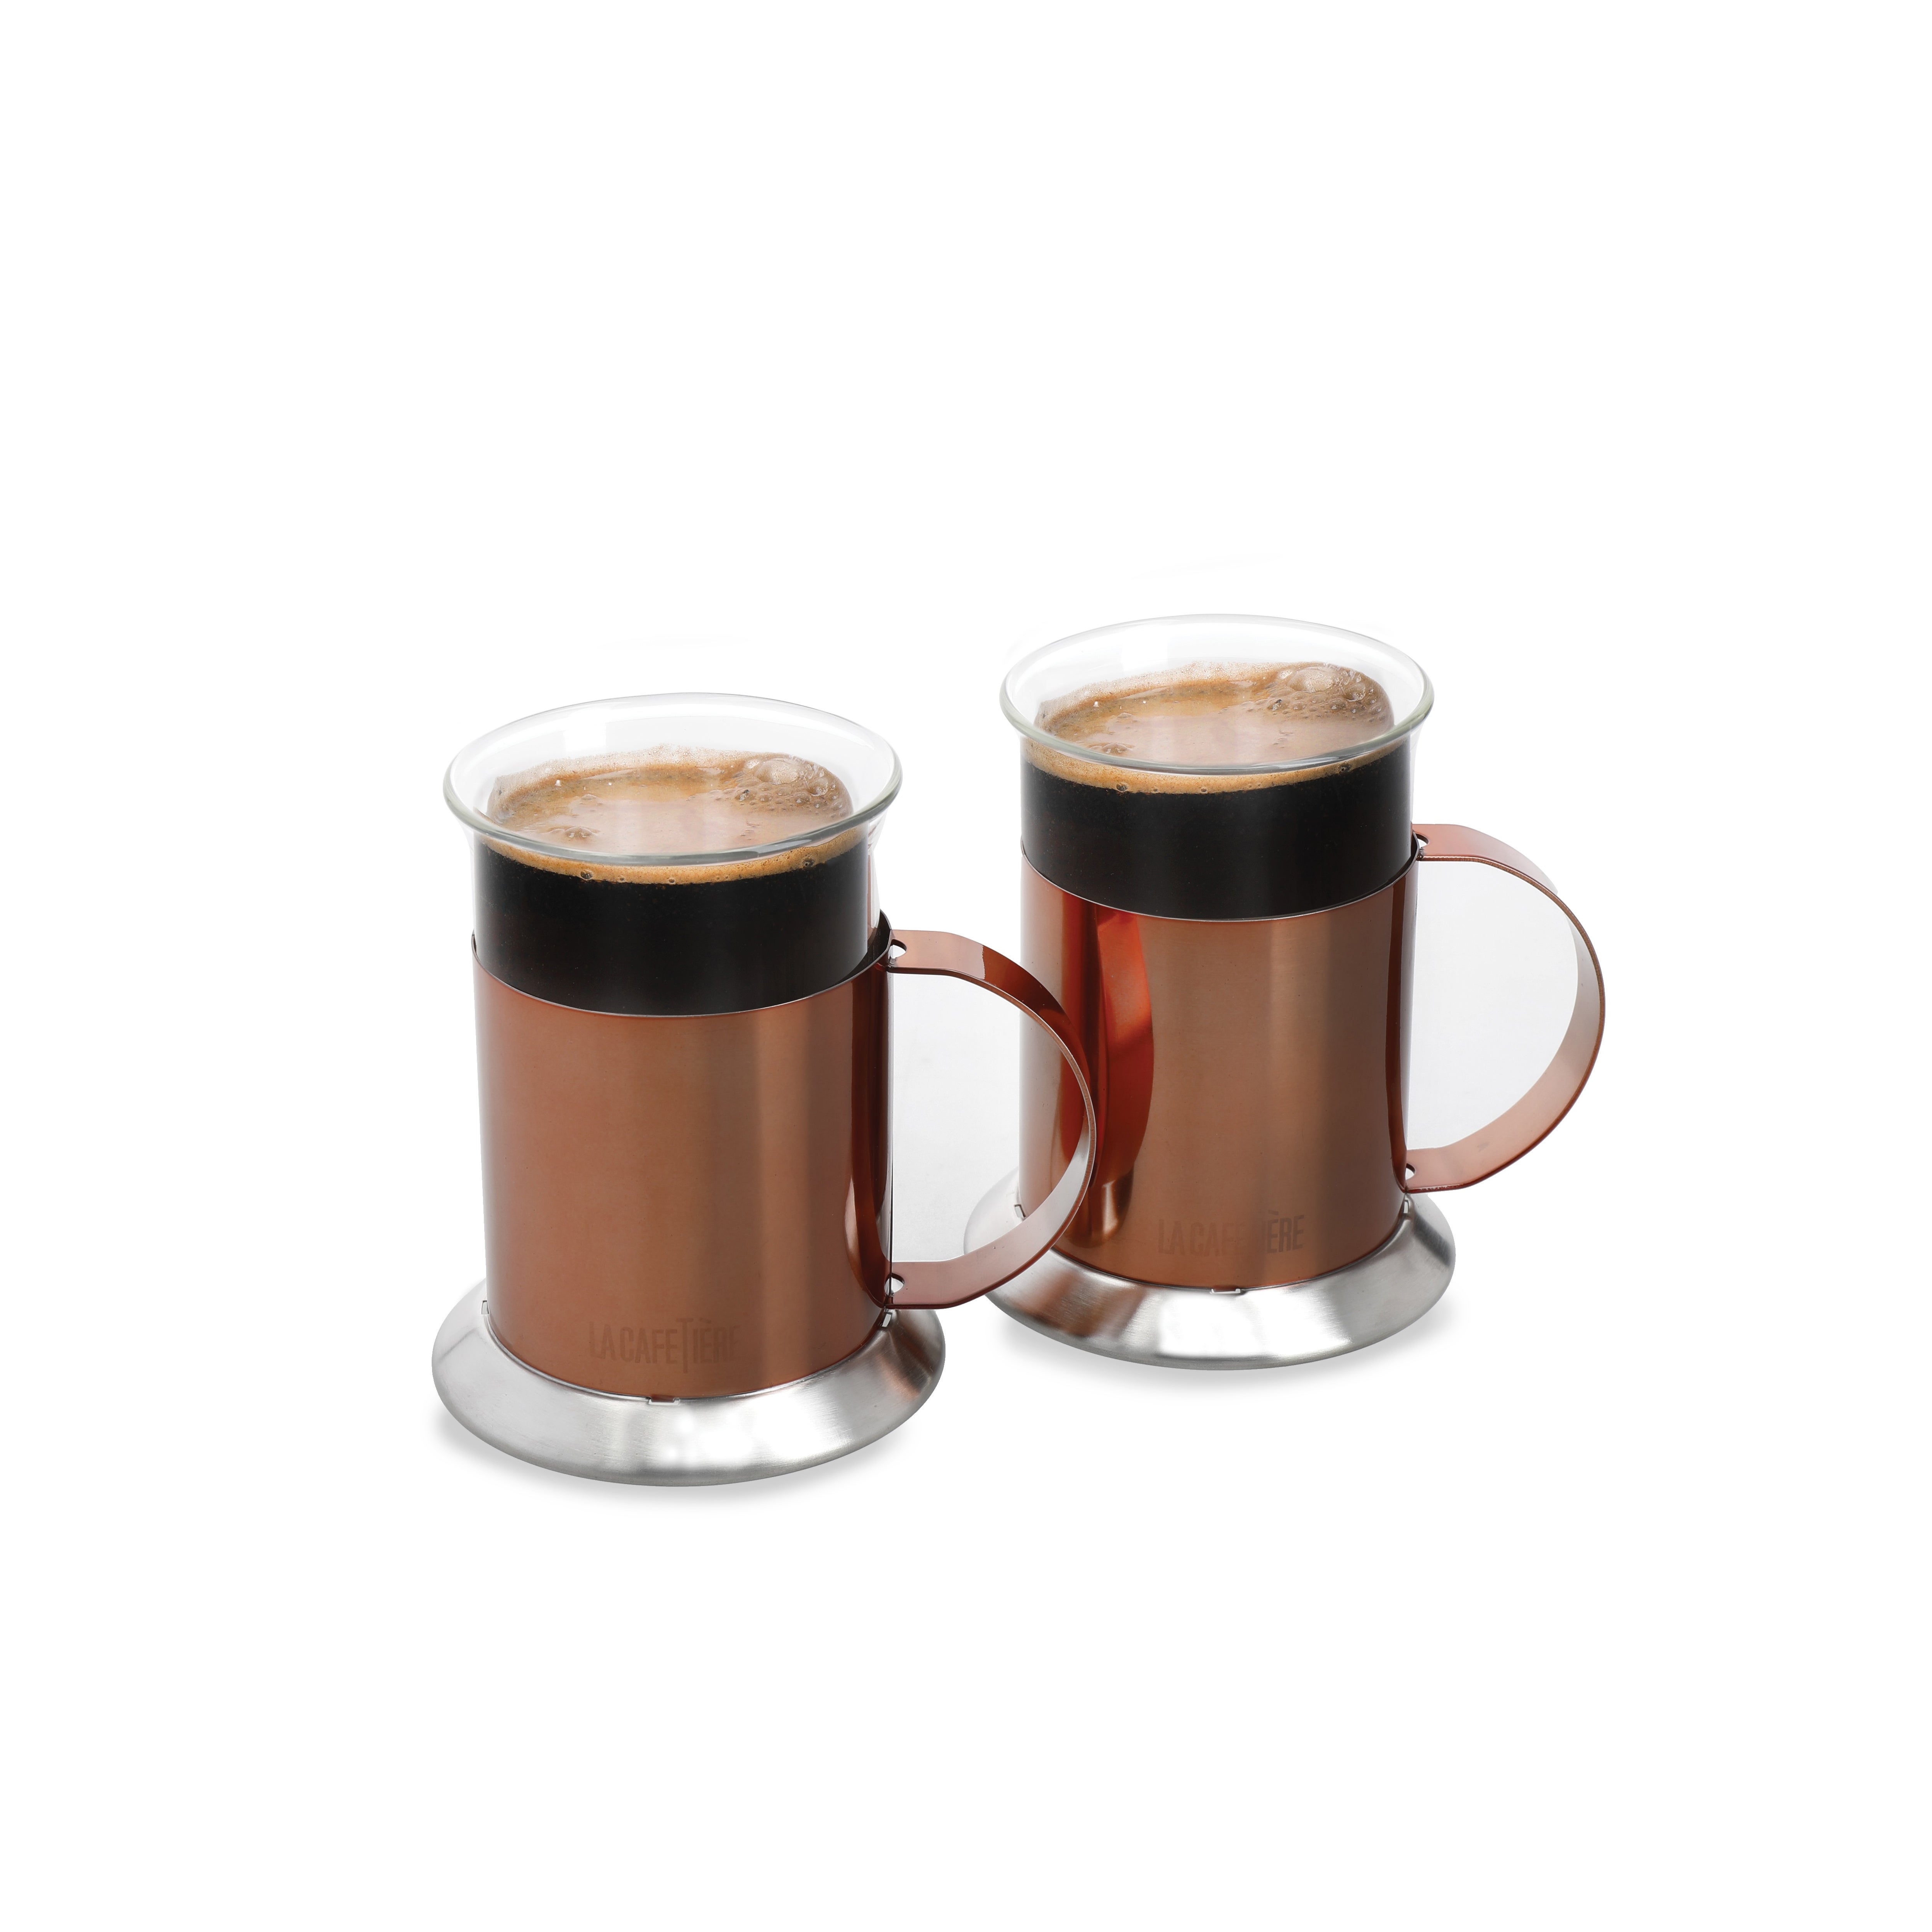 Photos - Mug / Cup La Cafetiere Set of 2  Copper Coffee Mugs Brown/Black 